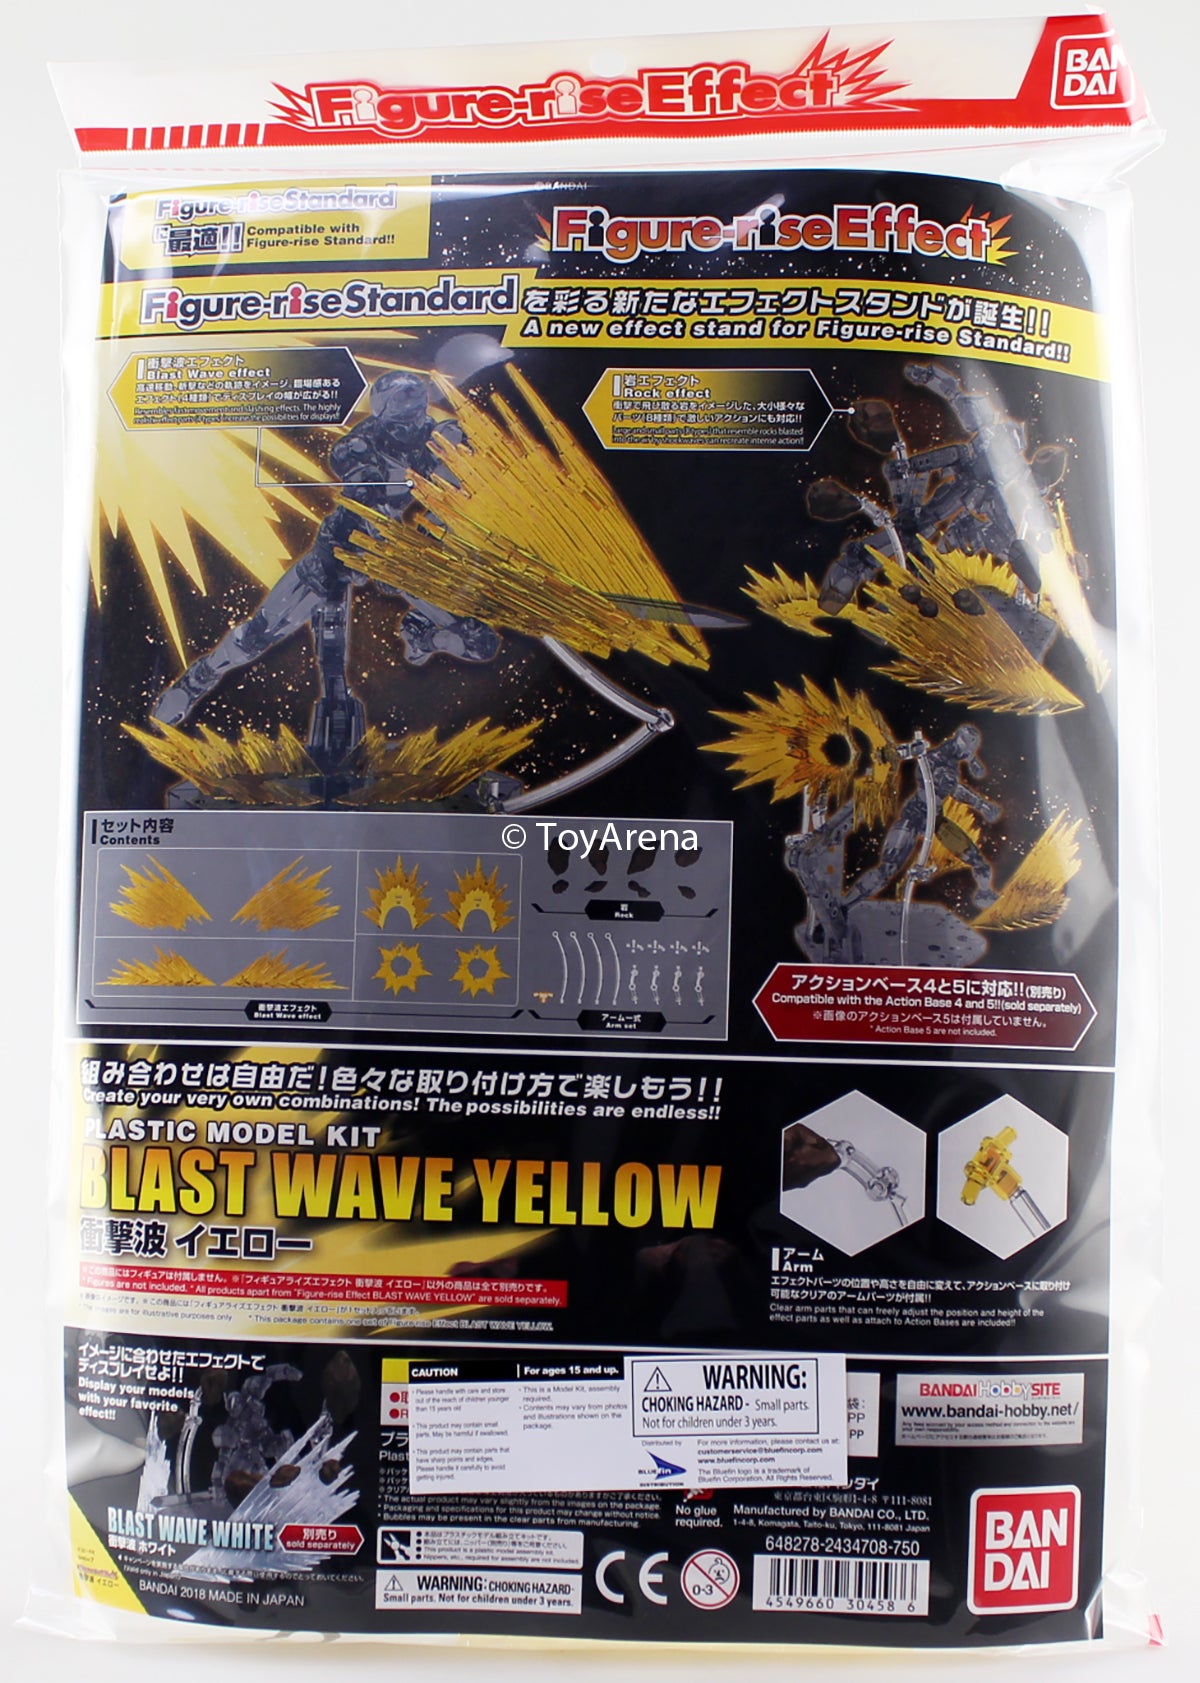 Figure-rise Standard Effect Blast Wave Shockwave Yellow Model Kit